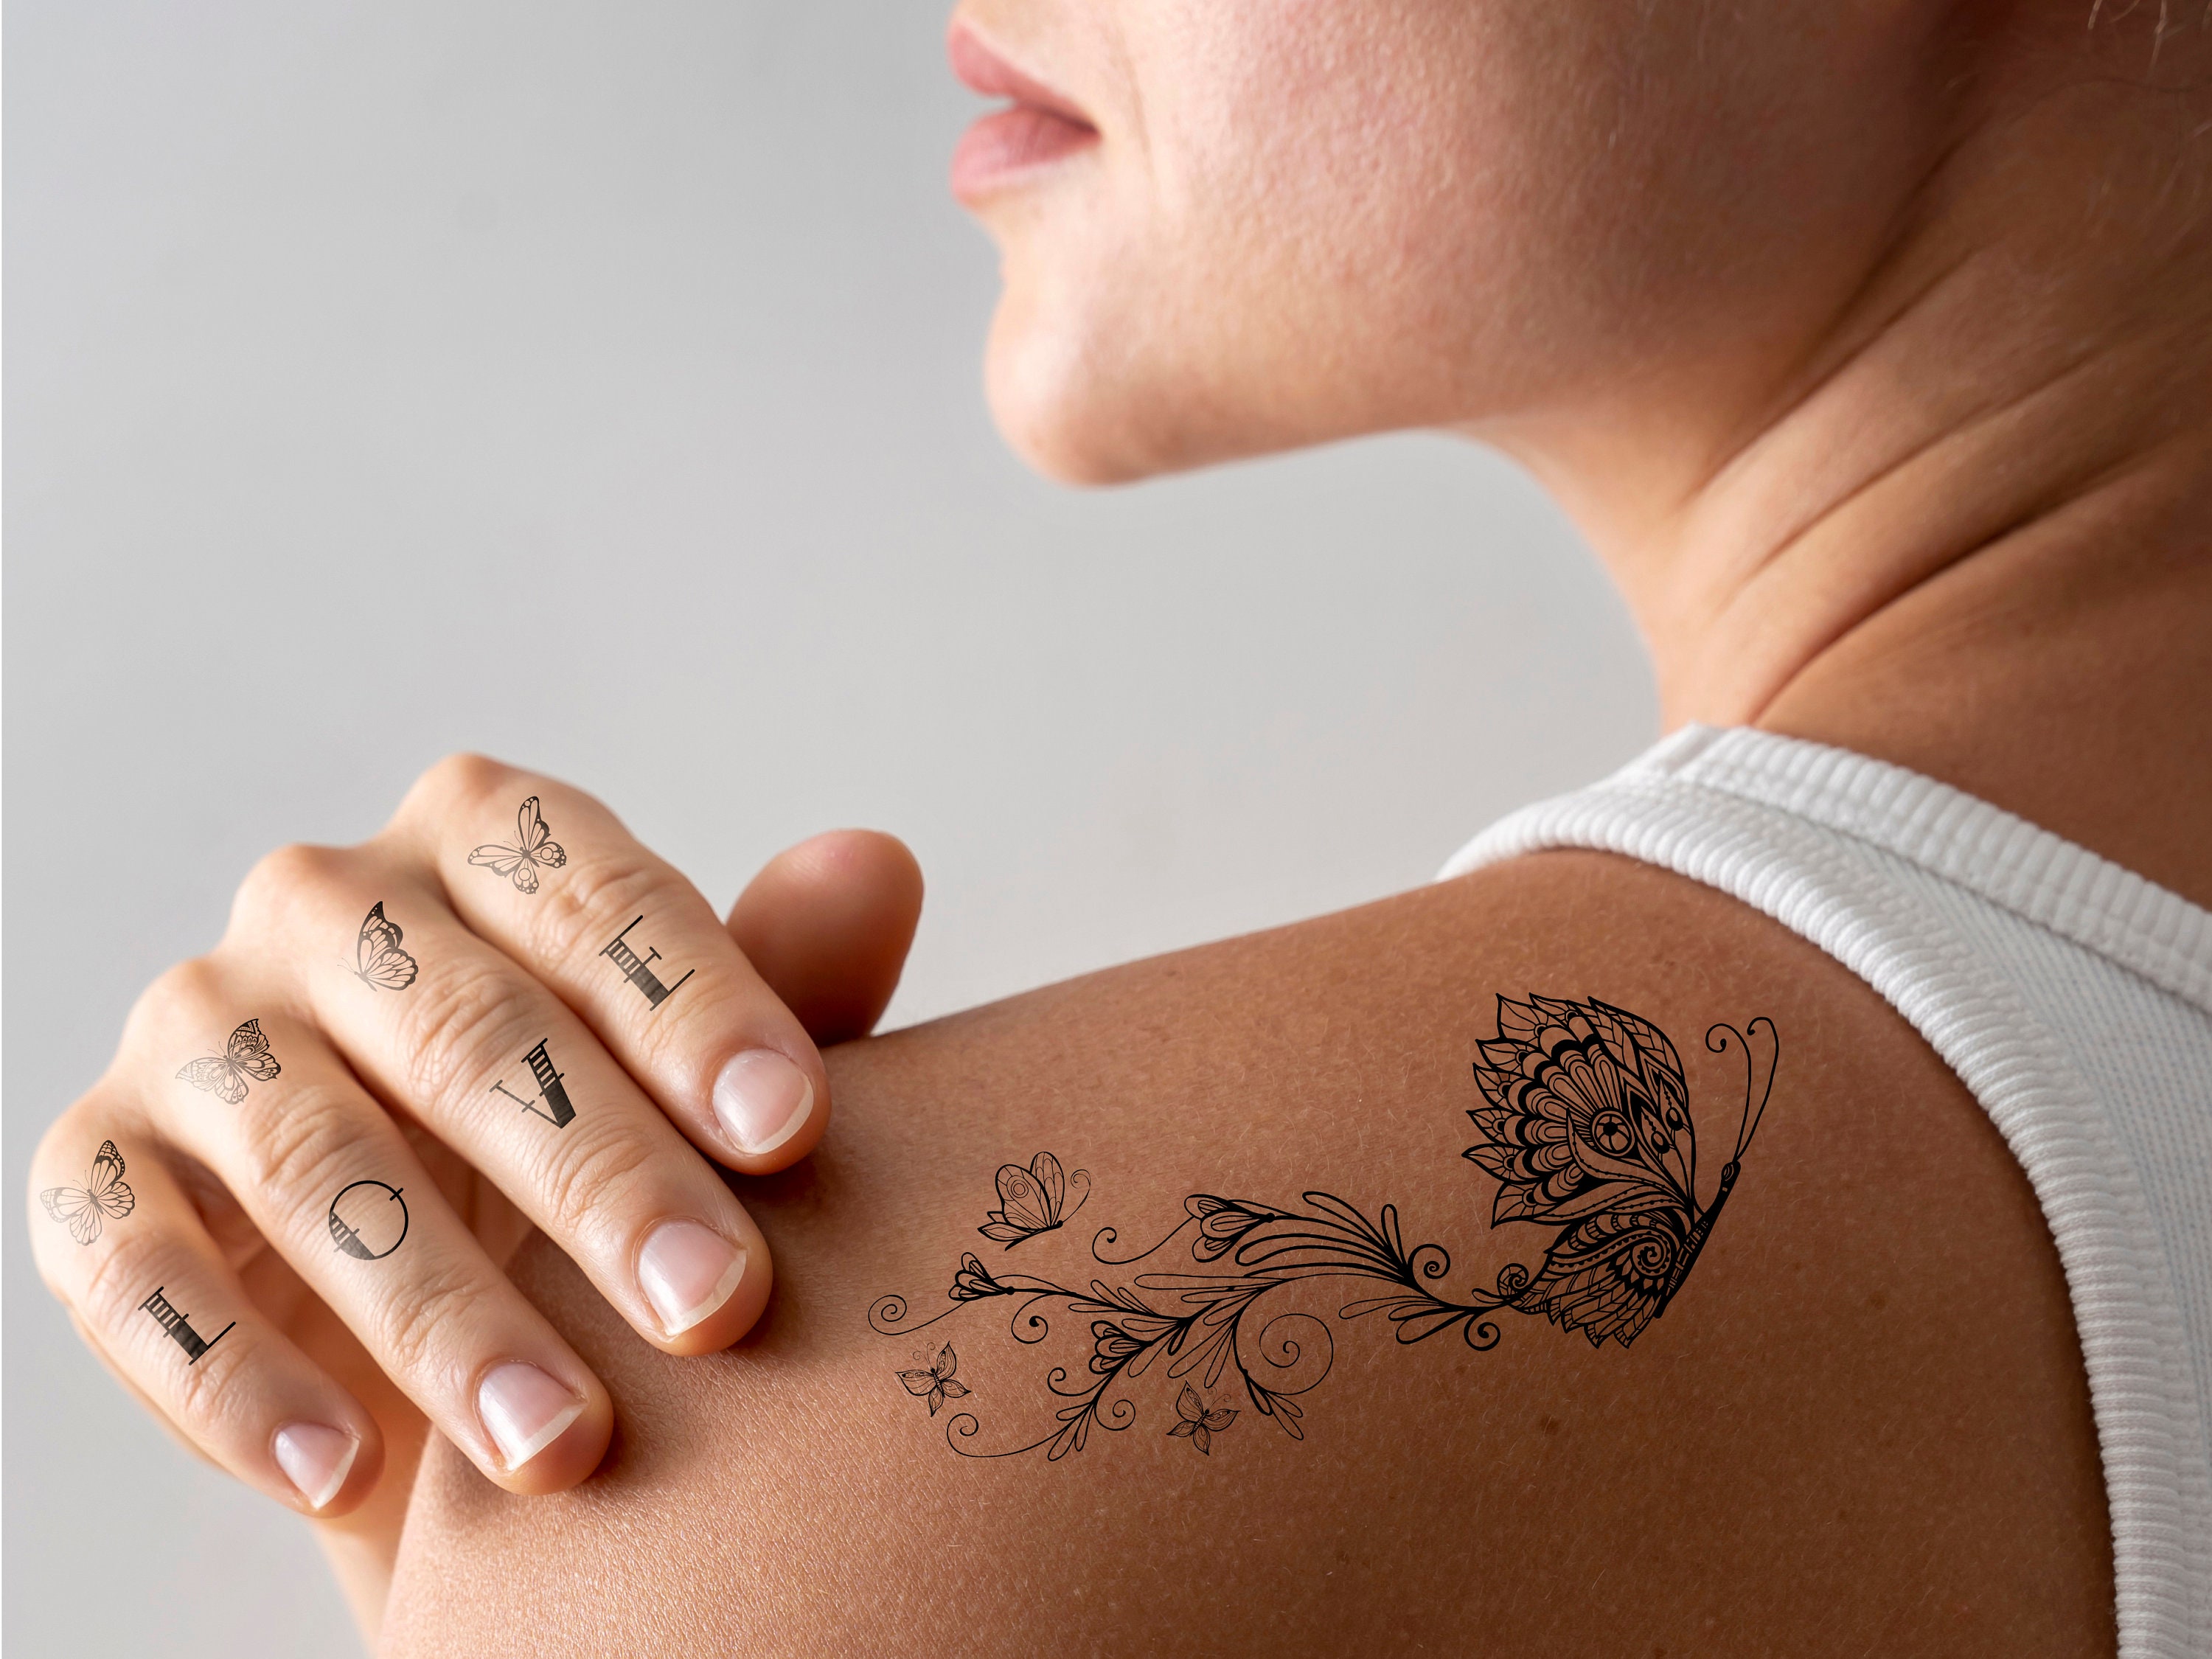 Comdoit Temporary Tattoo Kit Jagua Gel Semi Permanent Tattoo Freehand Ink  DIY Temp Tattoos for Women Kids Men Body Art Painting DIY Tattoos Fake  Freckles 35 Pcs Tattoo Stencils  Full Kit